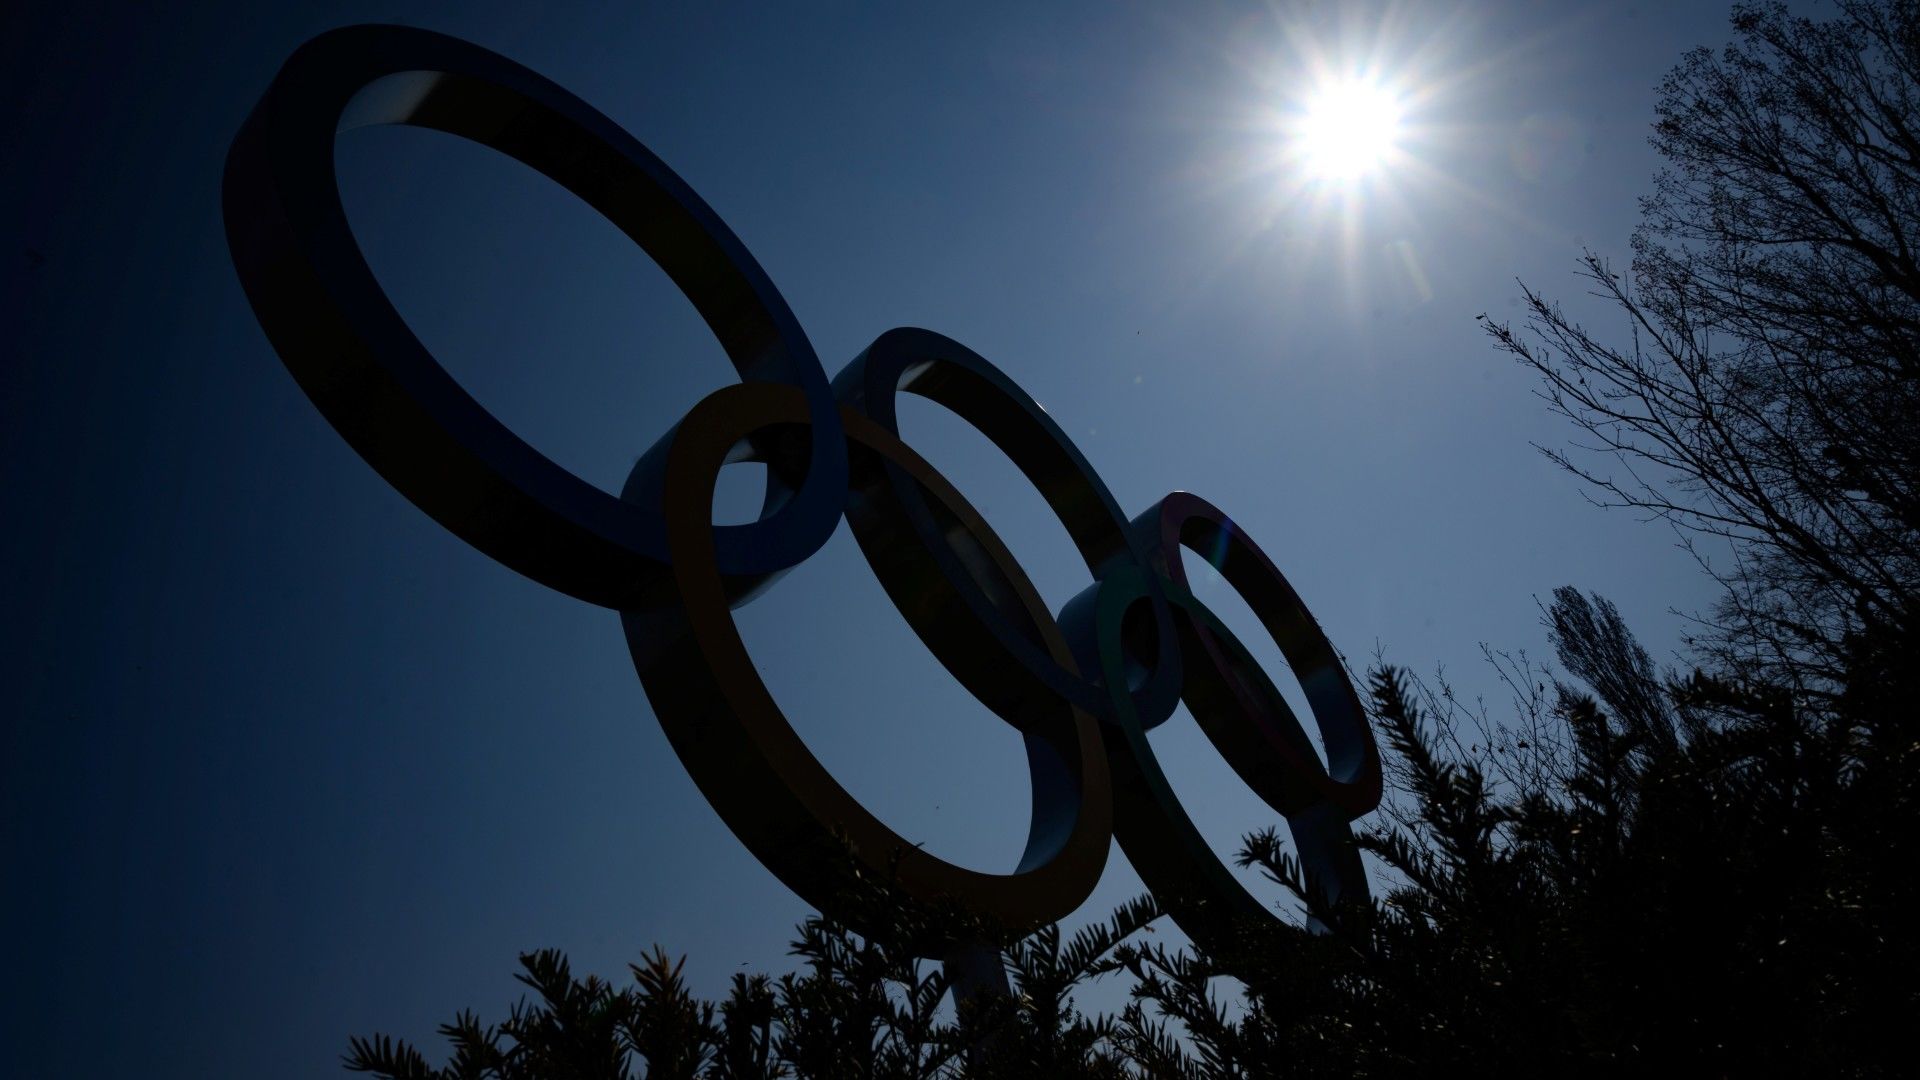 Olimpia lesz a tervek szerint, csak a sportolók félnek